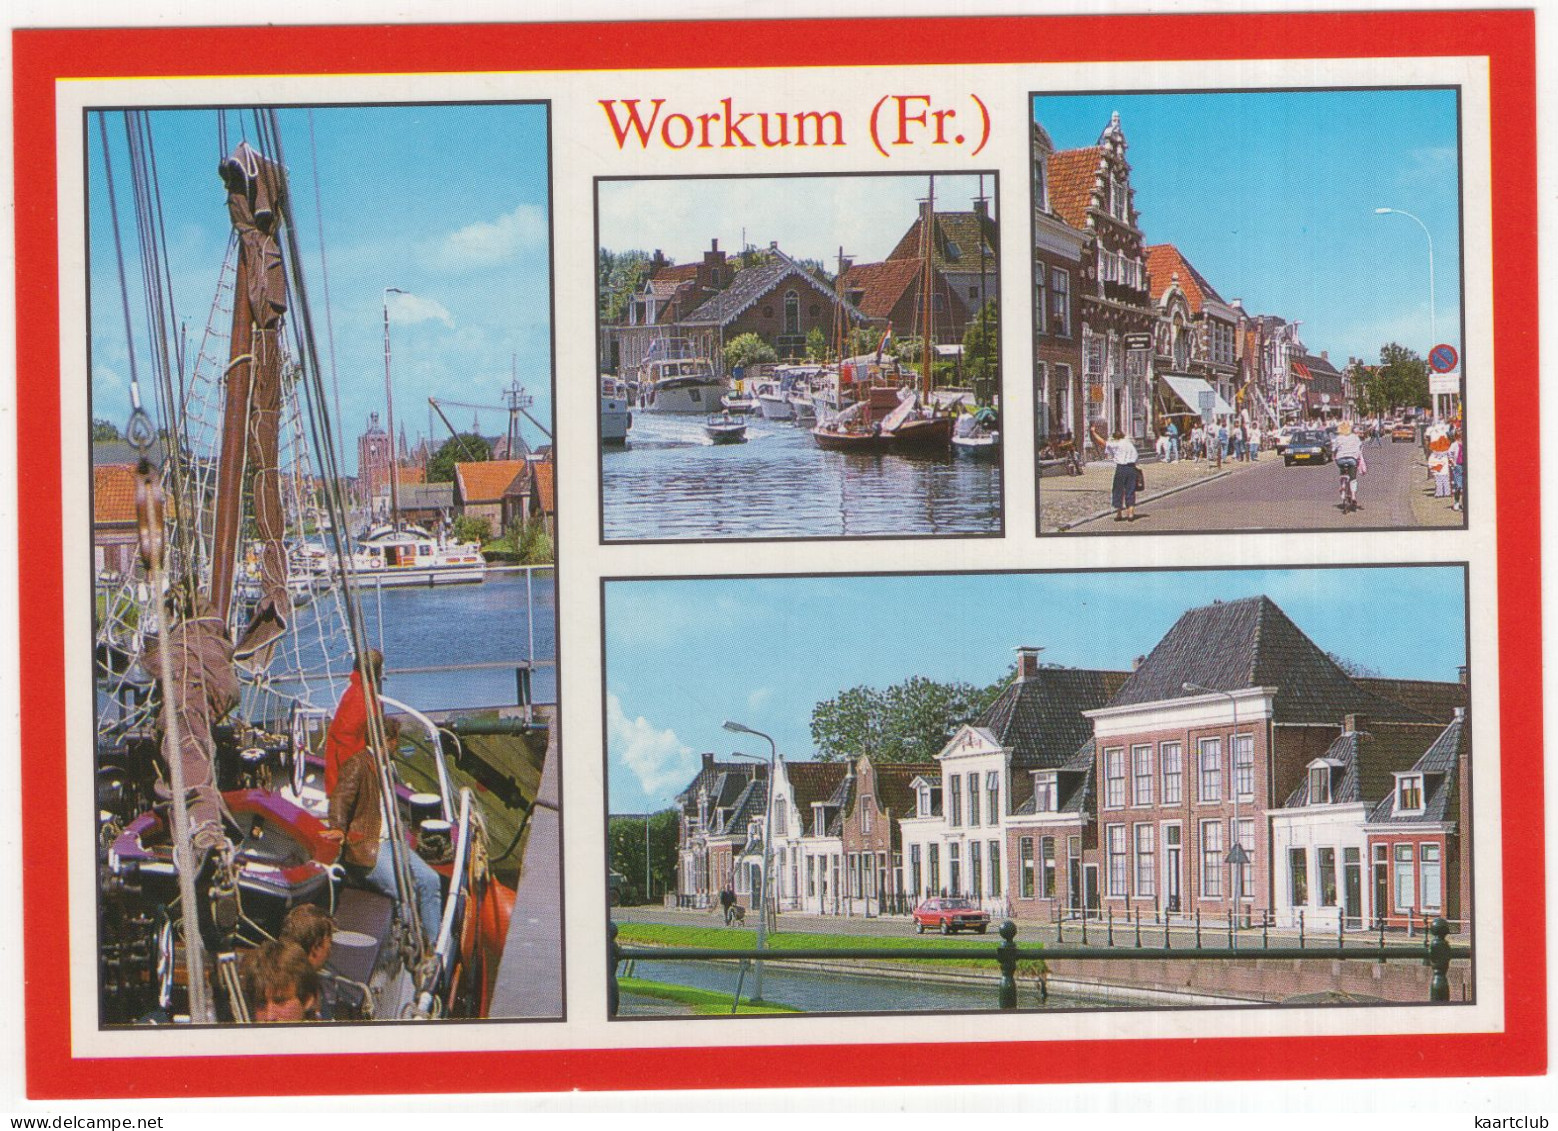 Workum (Fr.) - (Friesland, Nederland/Holland) - Workum